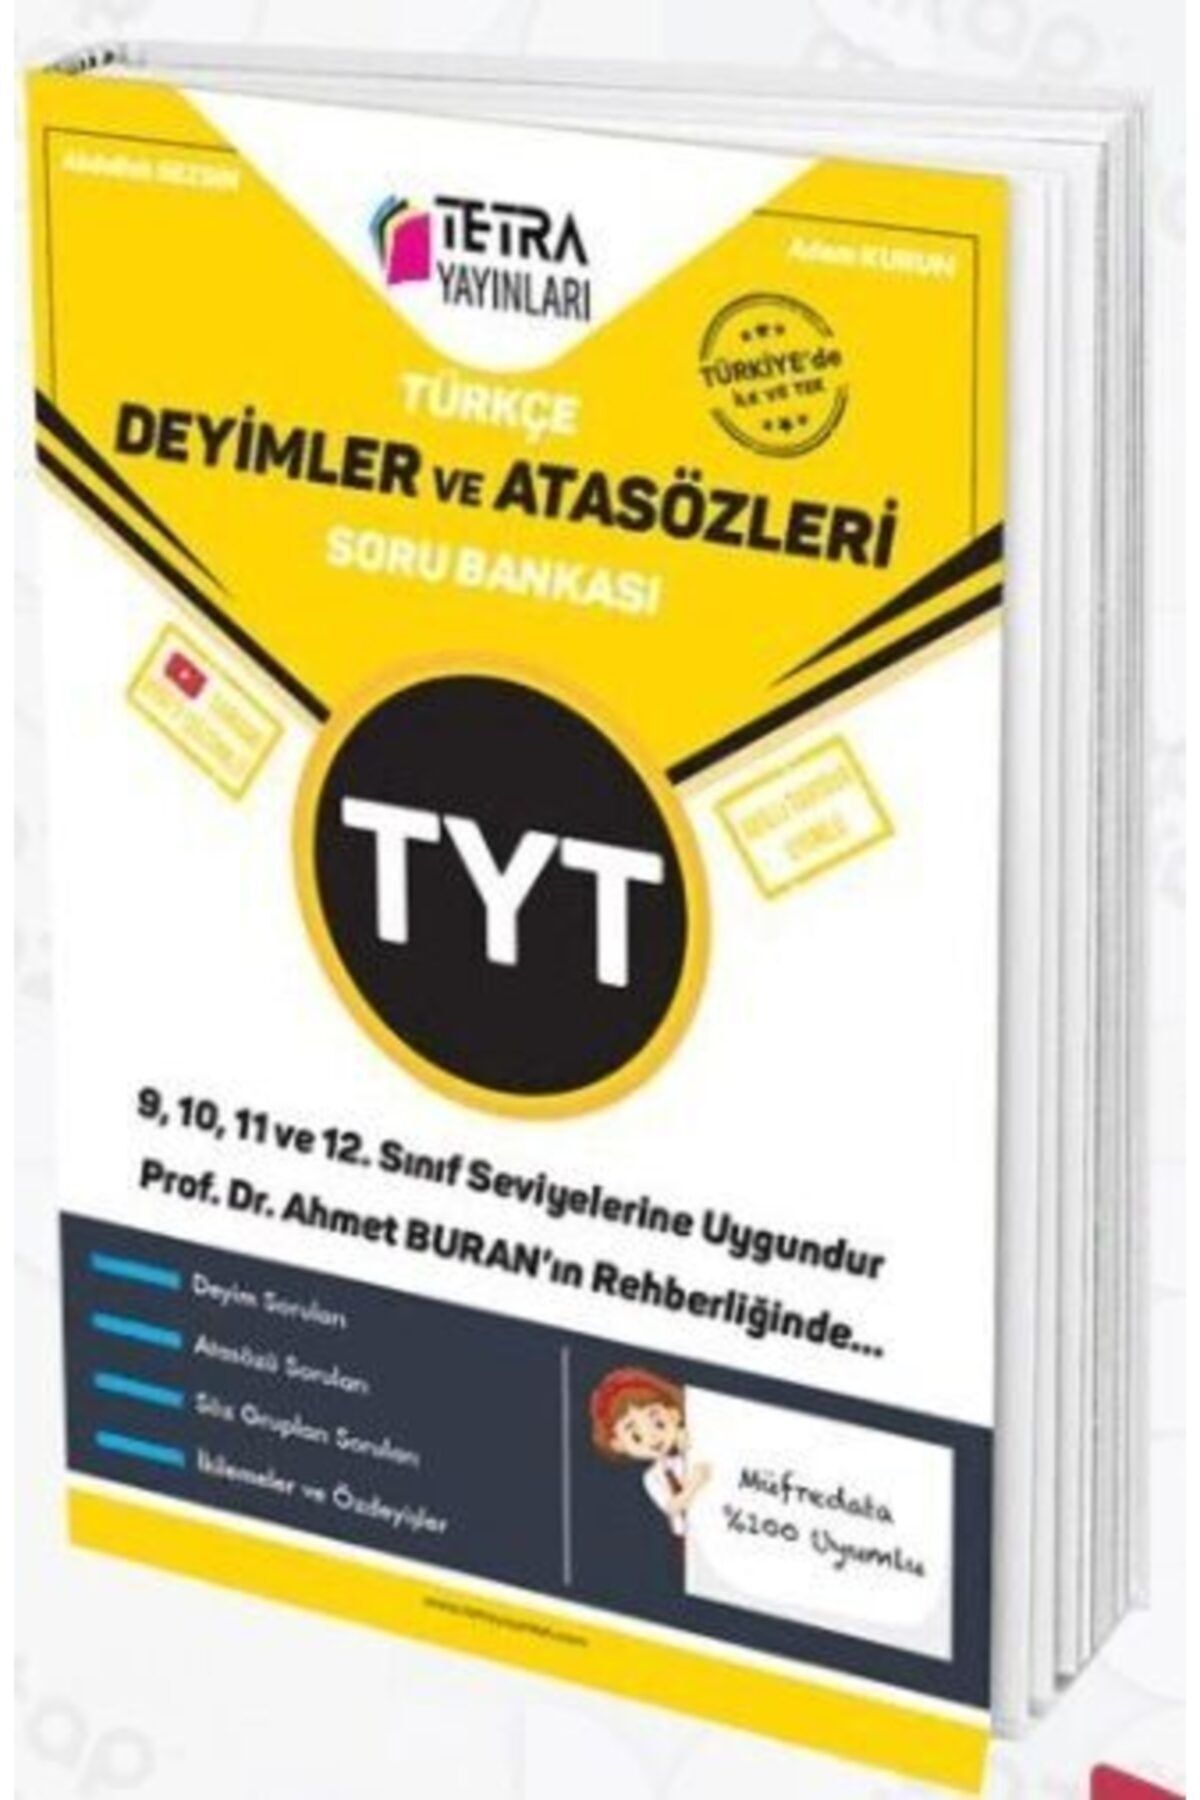 TETRA Yayınları 9,10,11,12. Sınıf Tyt Deyimler Ve Atasözleri Soru Bankası Yni